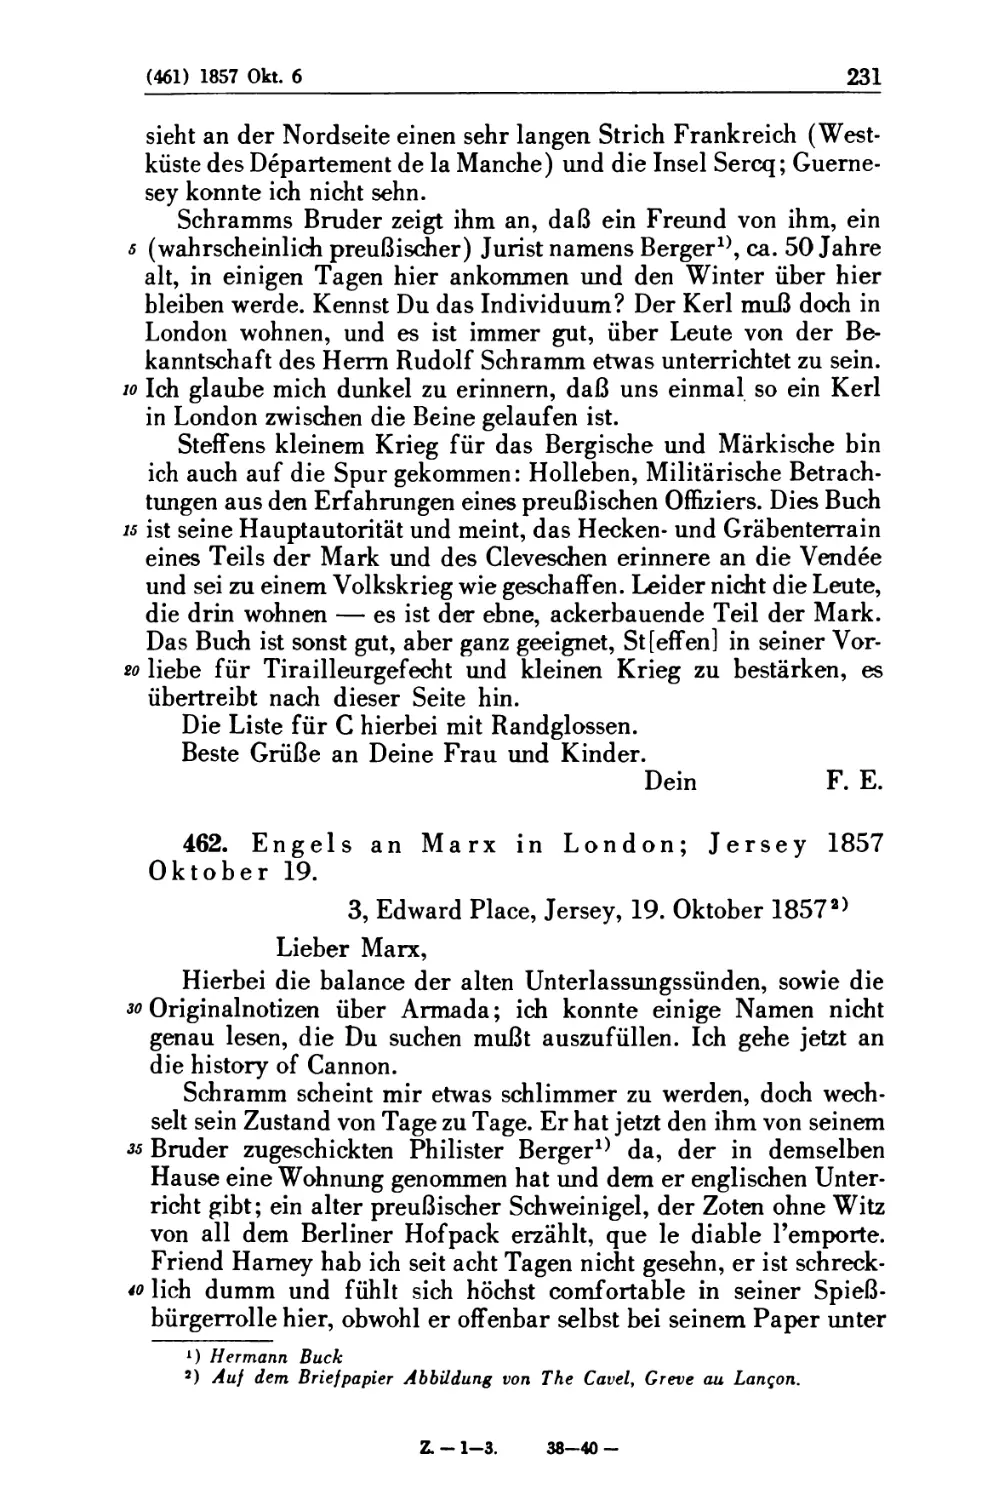 462. Engels an Marx in London; Jersey 1857 Oktober 19